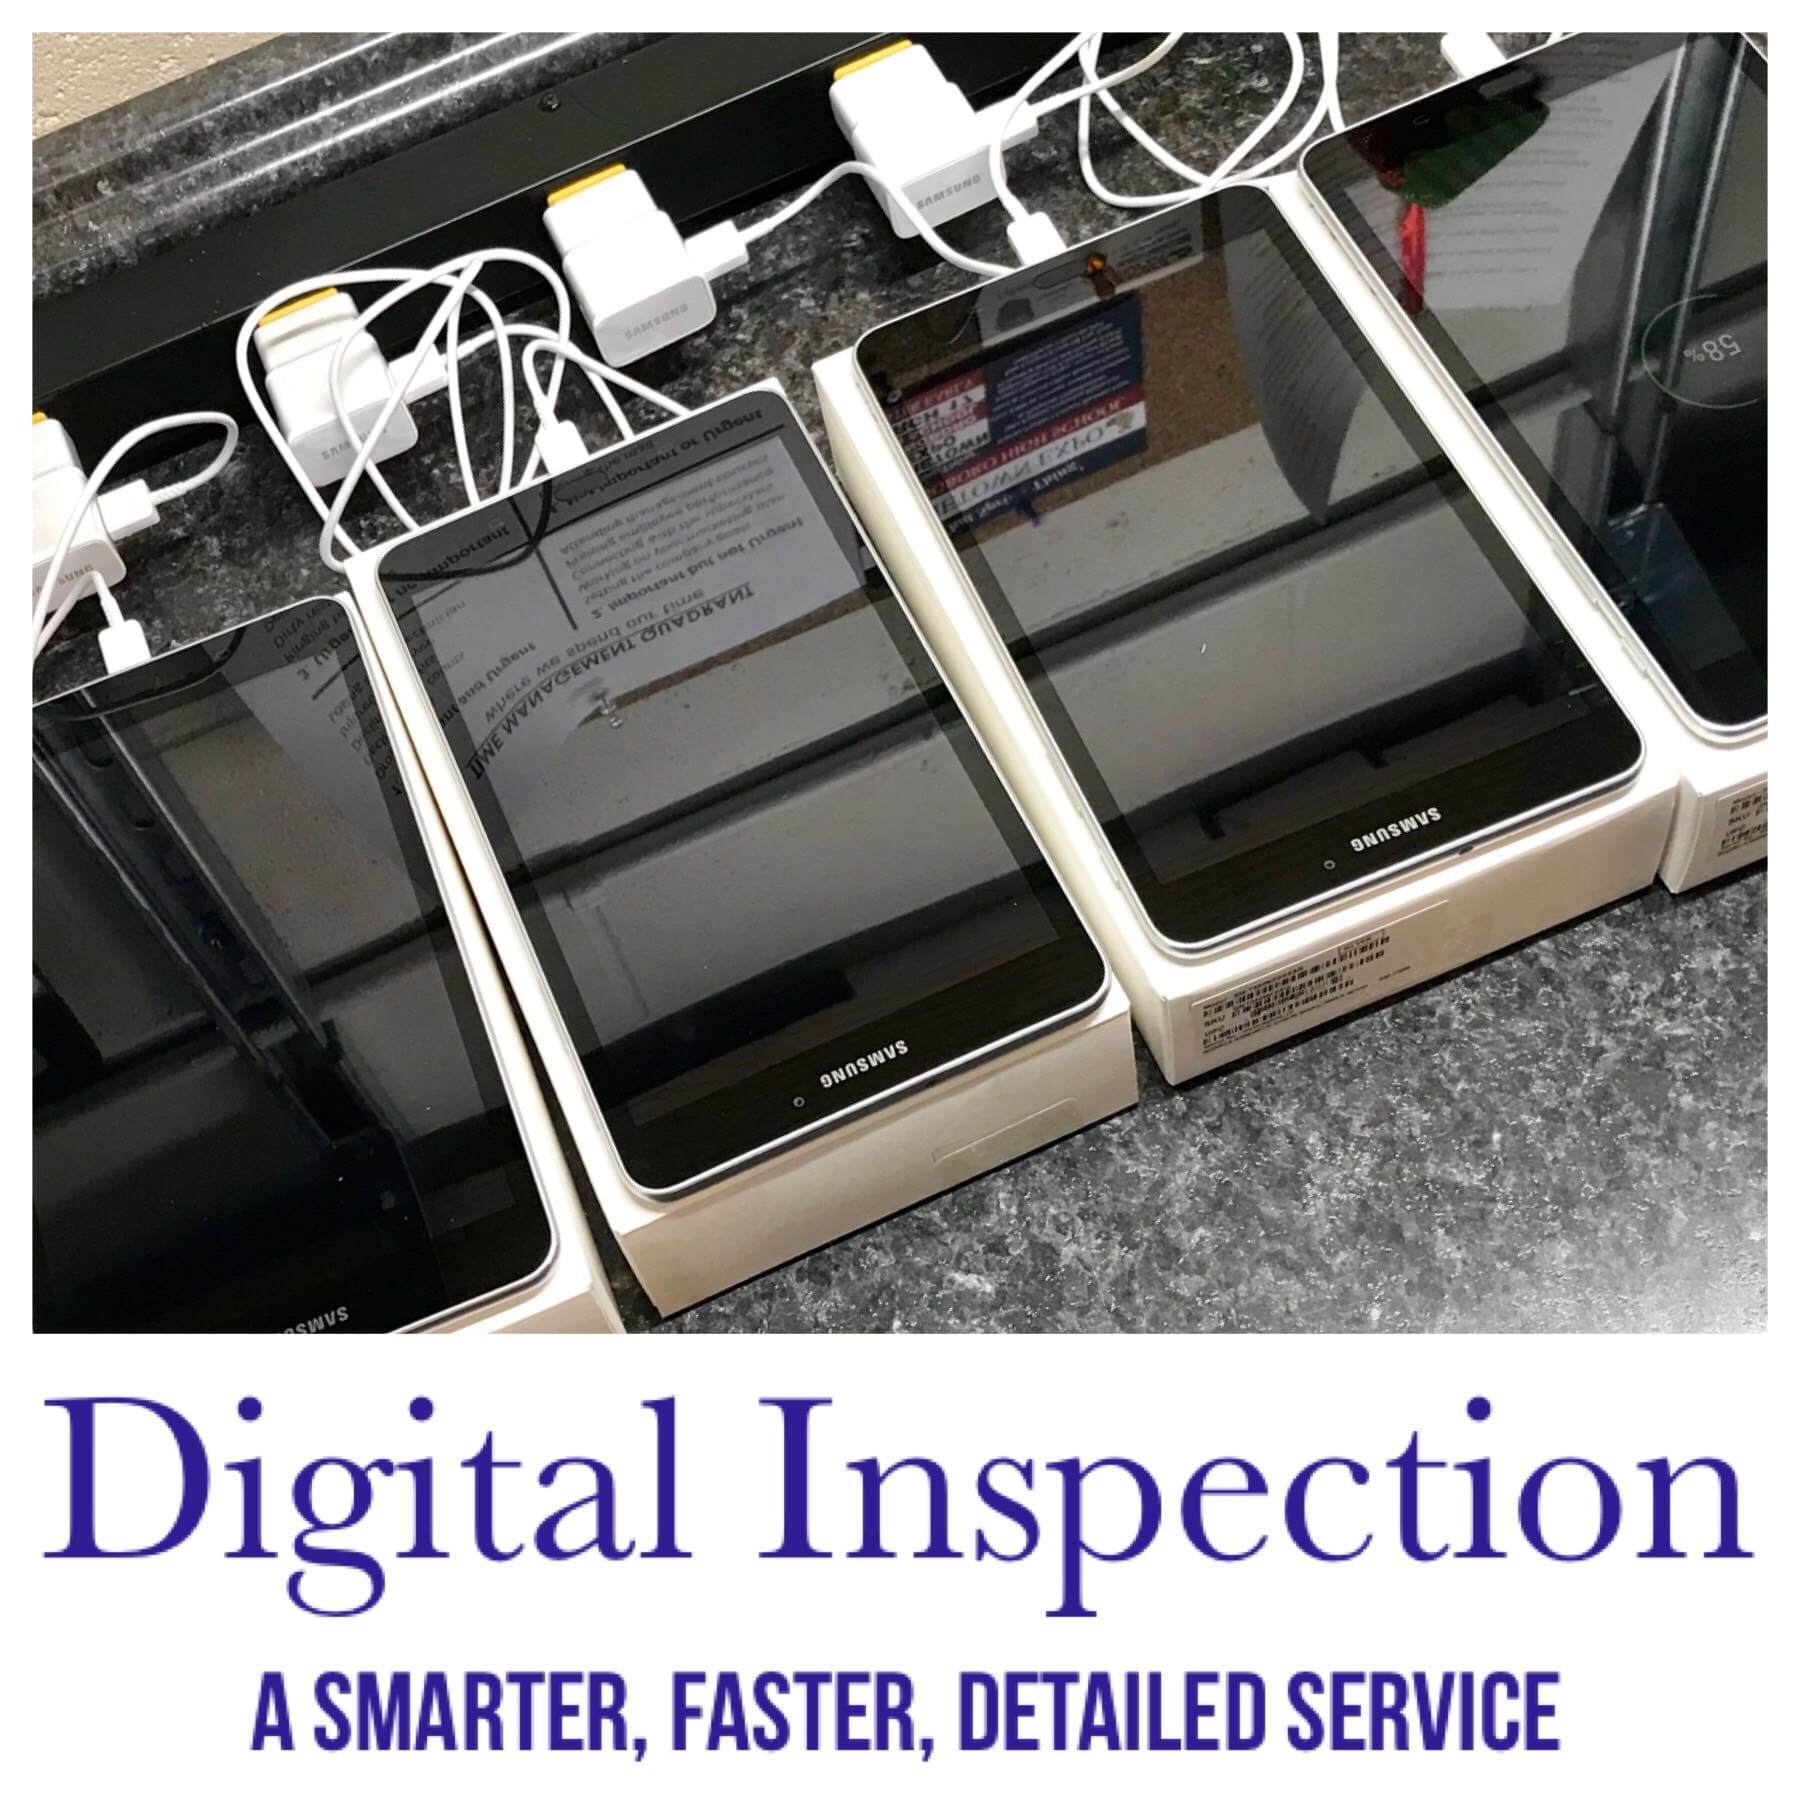 Digital inspection